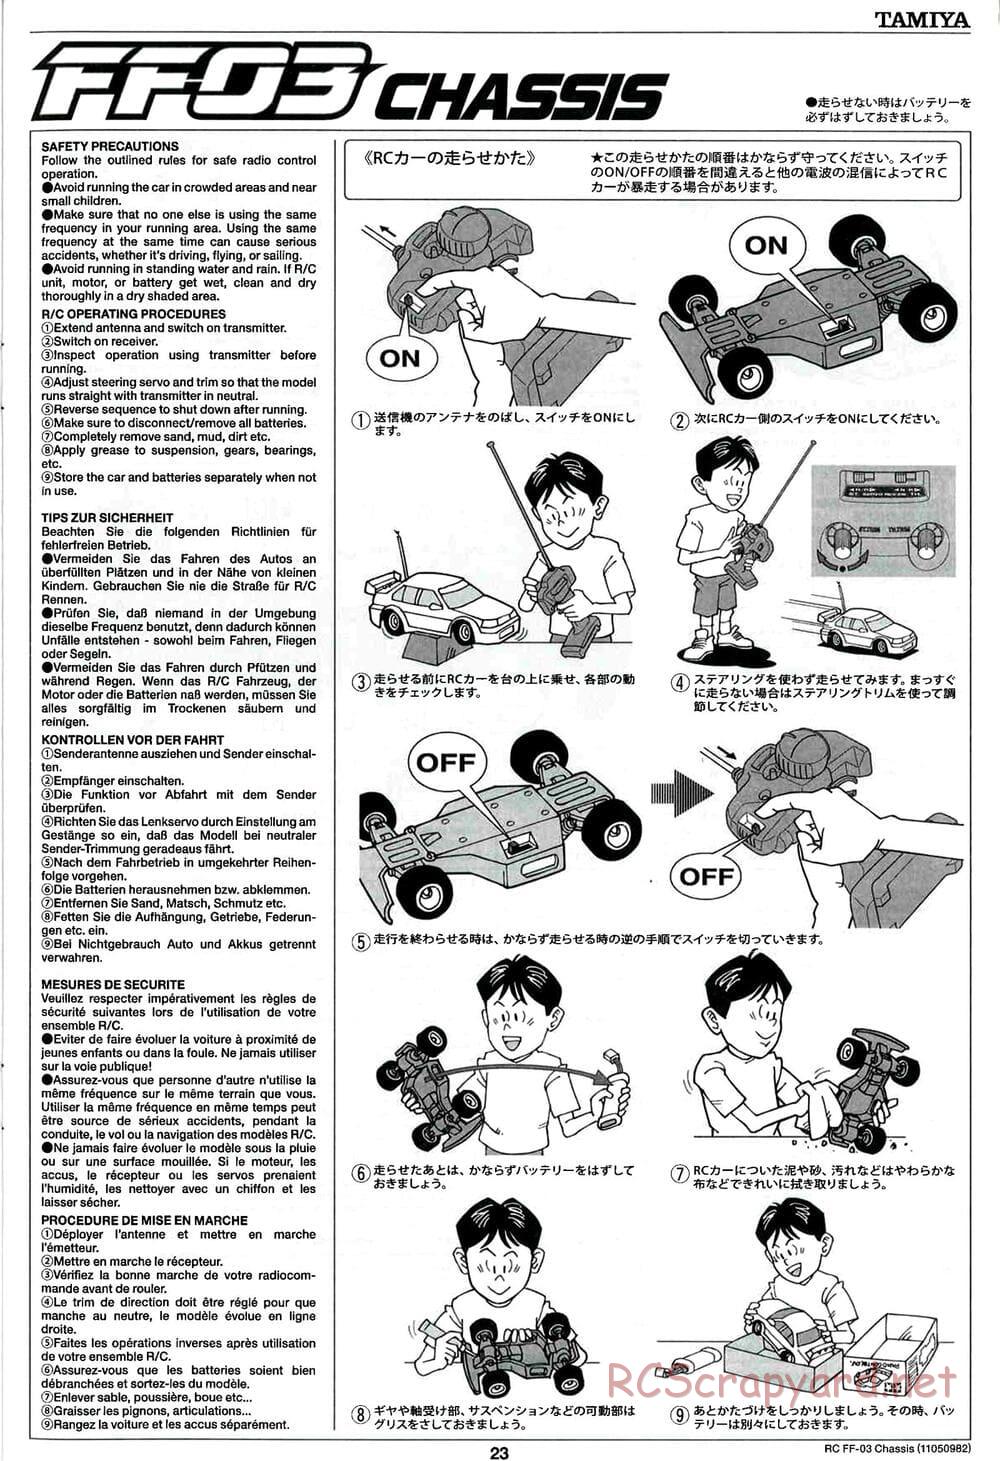 Tamiya - Honda Accord Aero Custom - FF-03 Chassis - Manual - Page 23